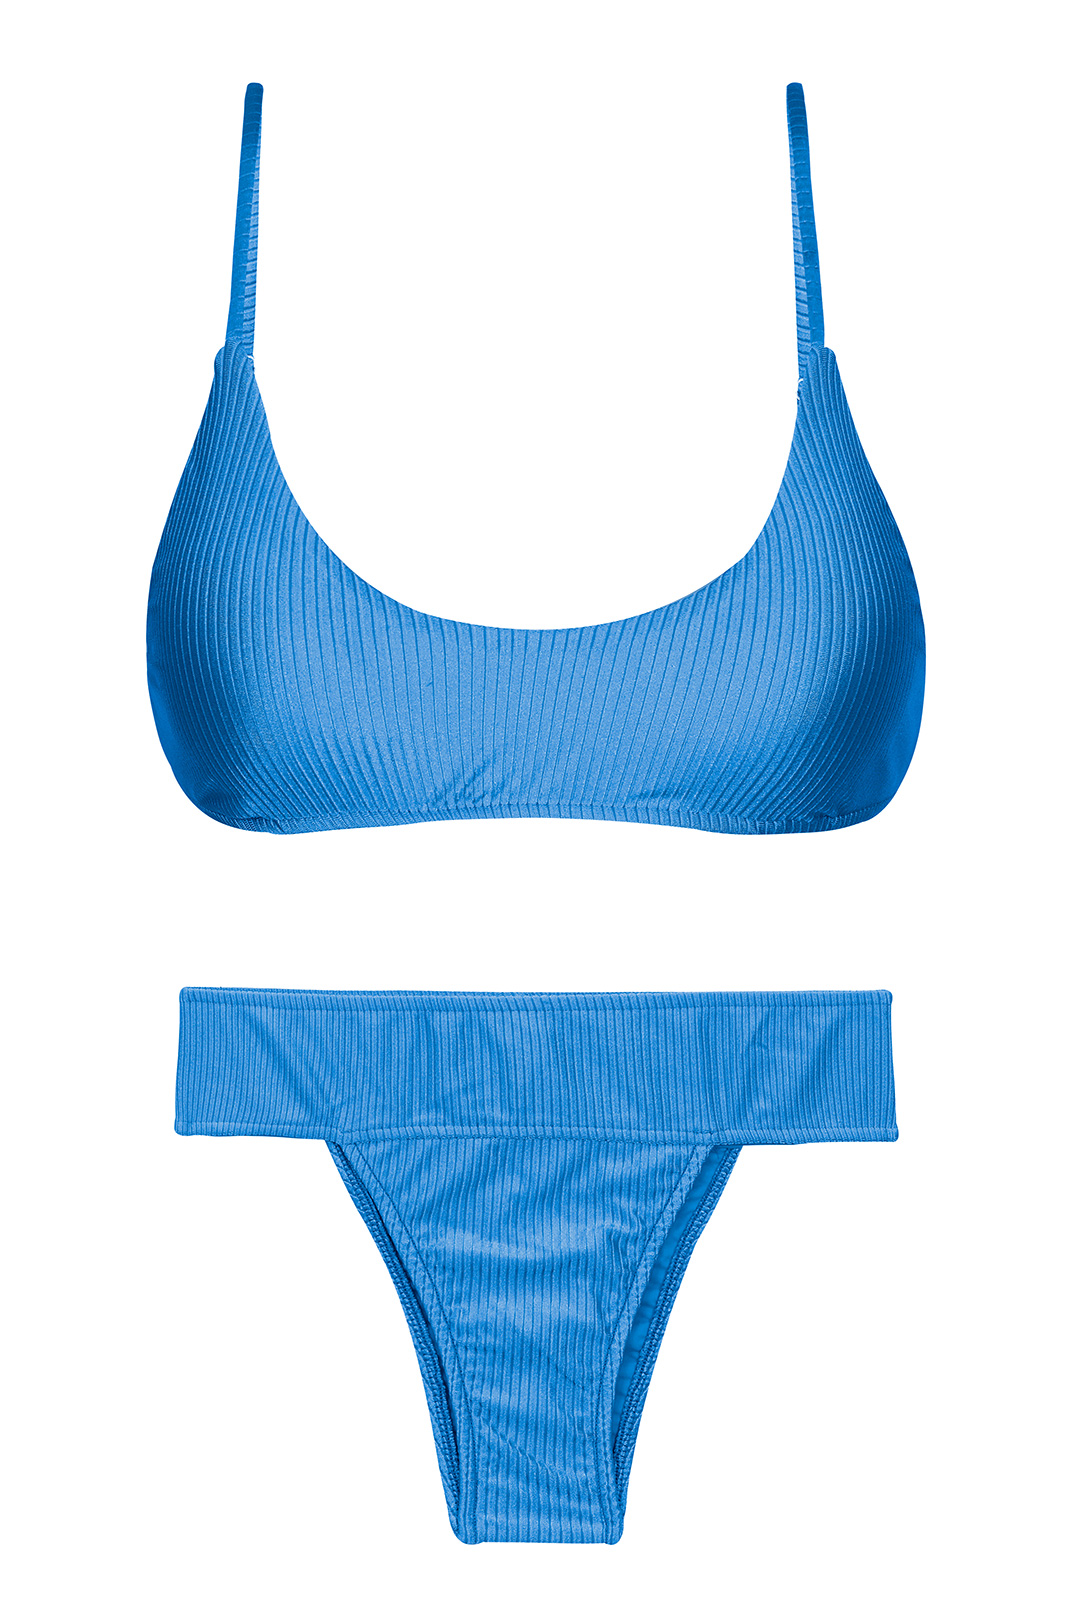 Wide Waist Textured Blue Bikini With Bralette Top - Set Eden-enseada ...